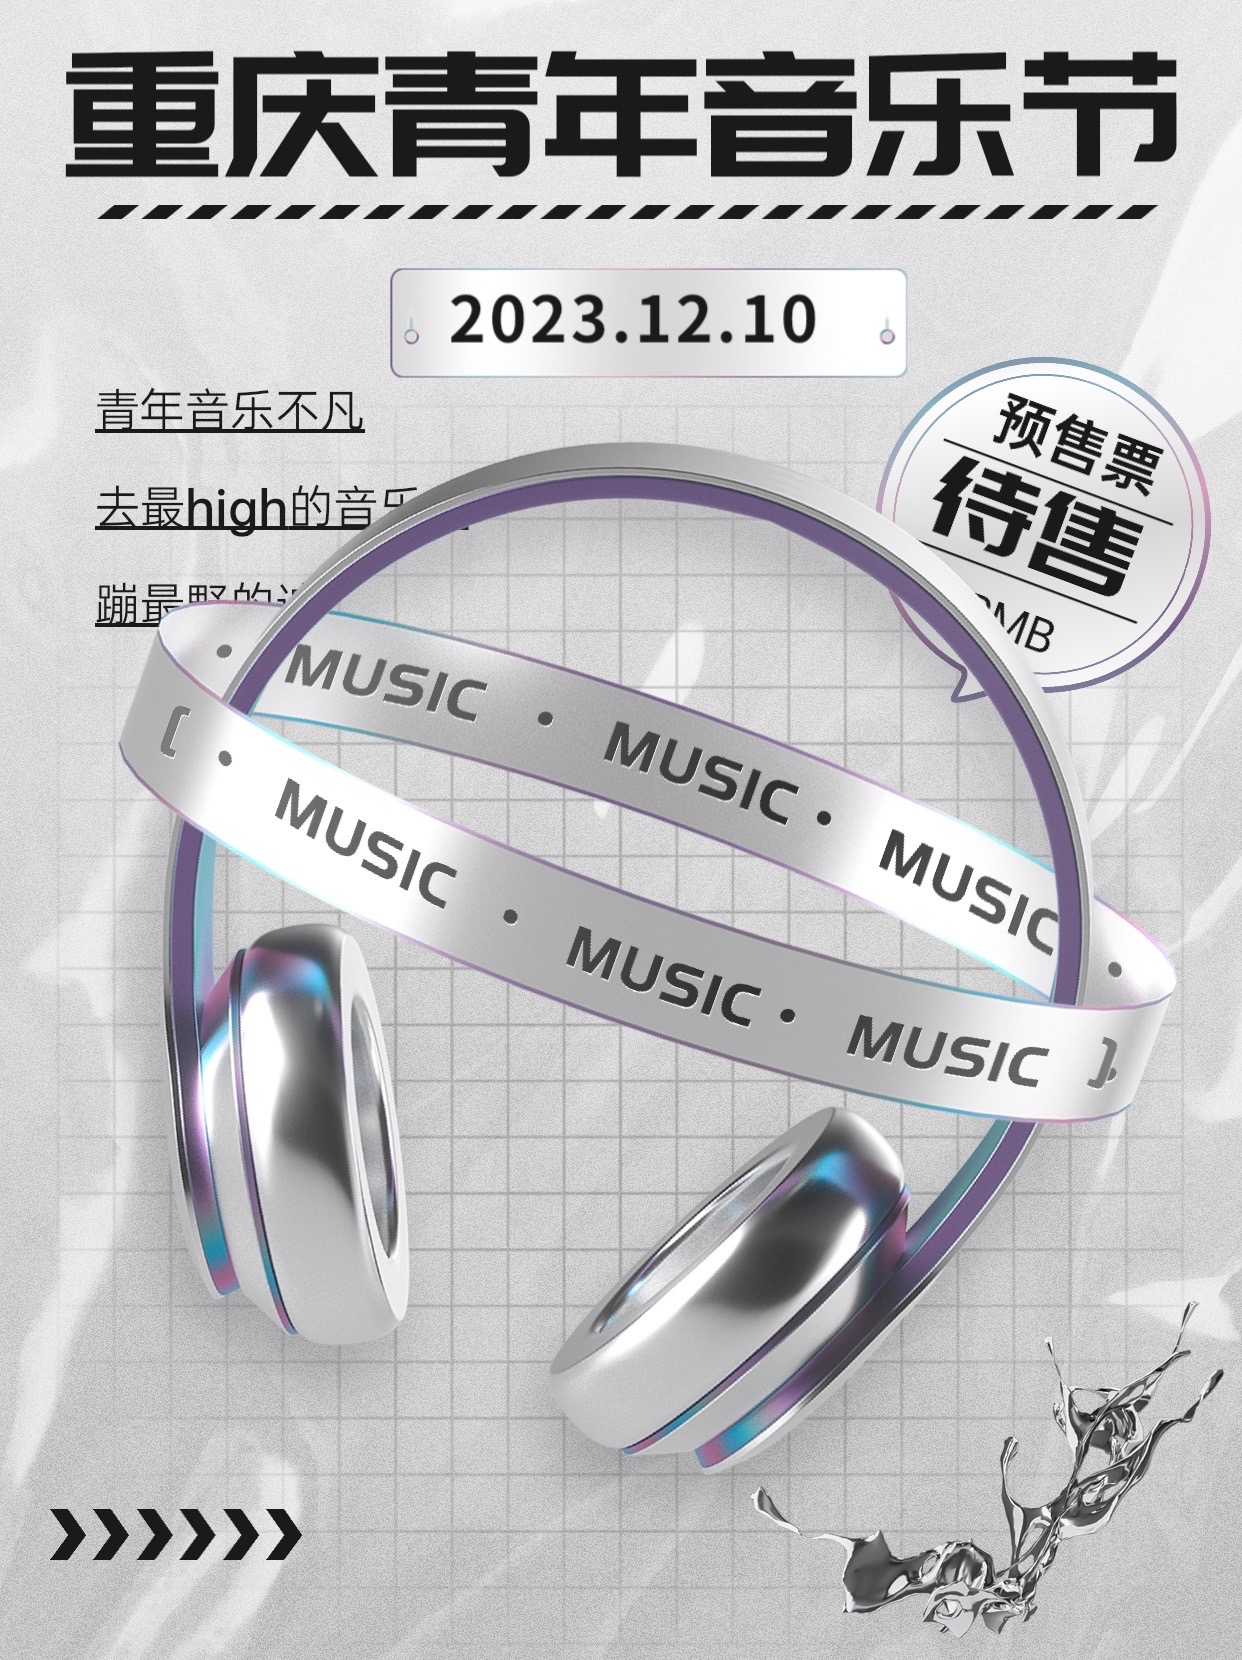 重庆青年音乐节来袭‼️ 2023年重庆年底的一场大型音乐节来袭，跟着攻略不踩坑😚 - ⌚️时间：20